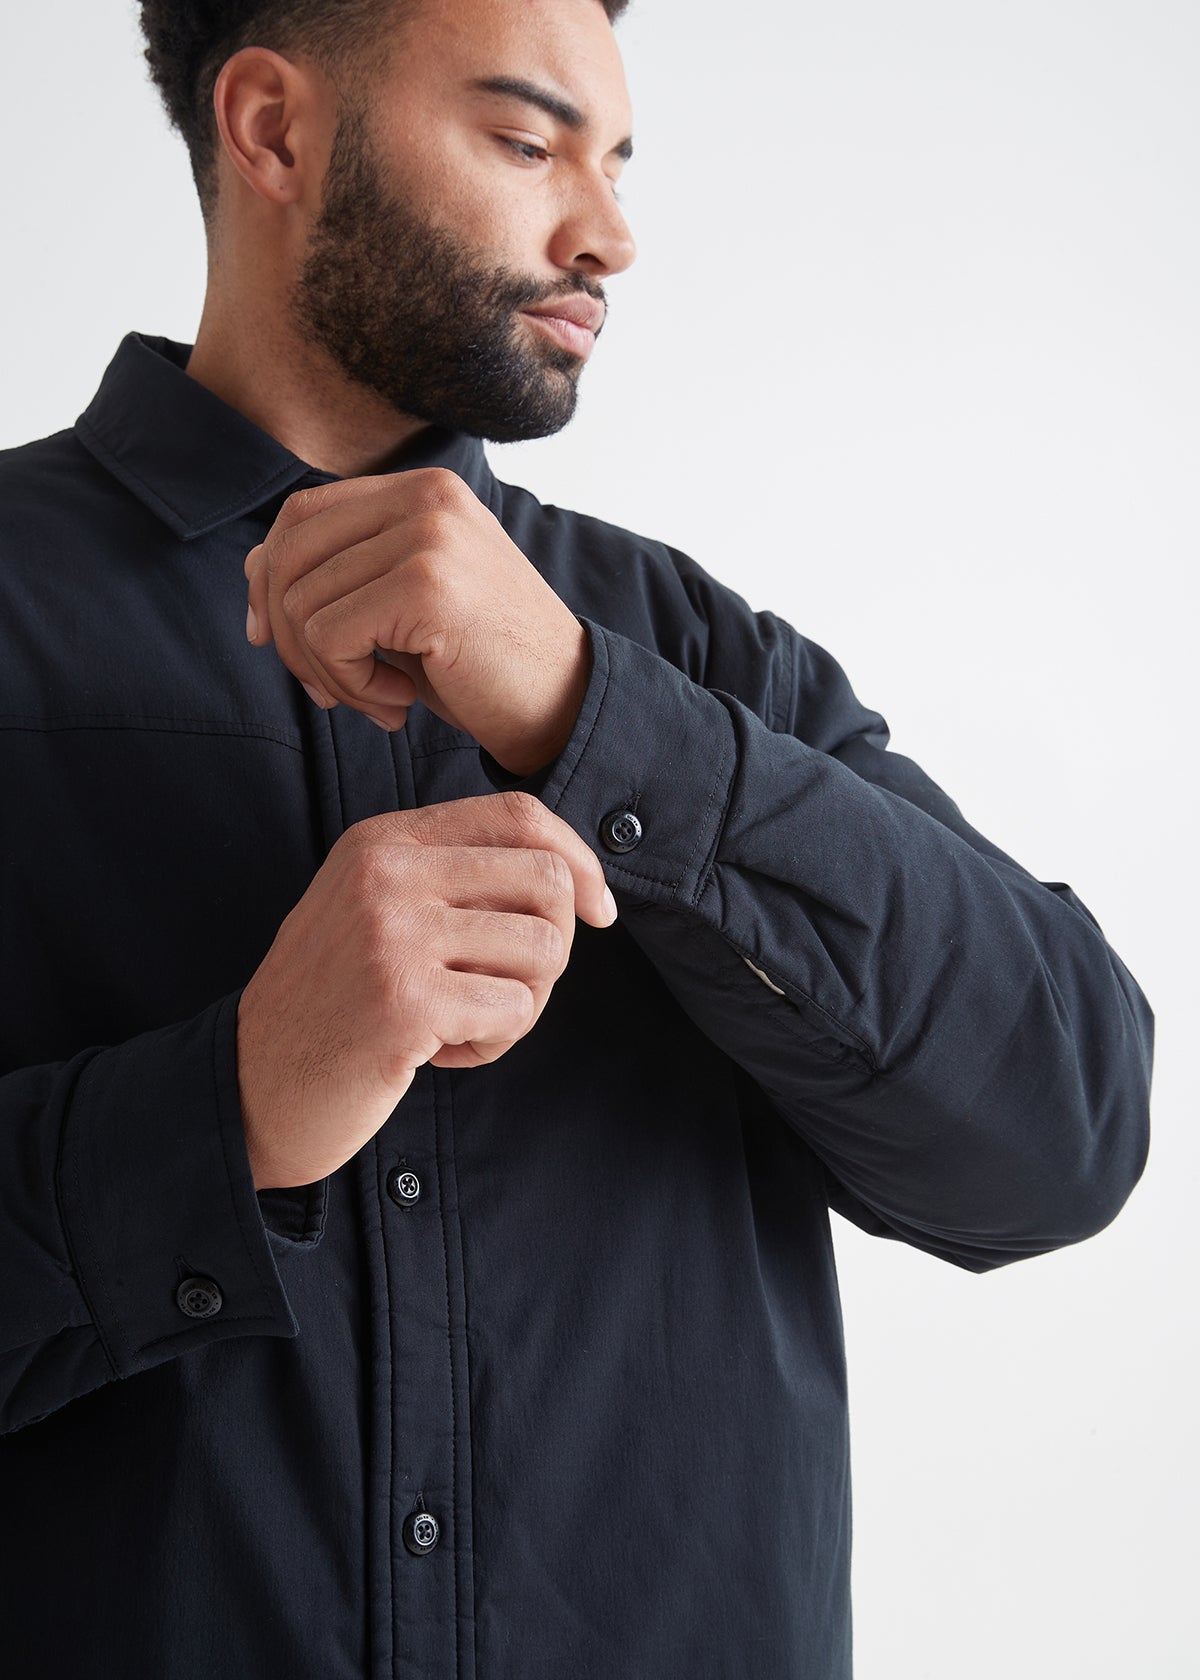 mens lightweight insulated black shirt jacket cuff buttons